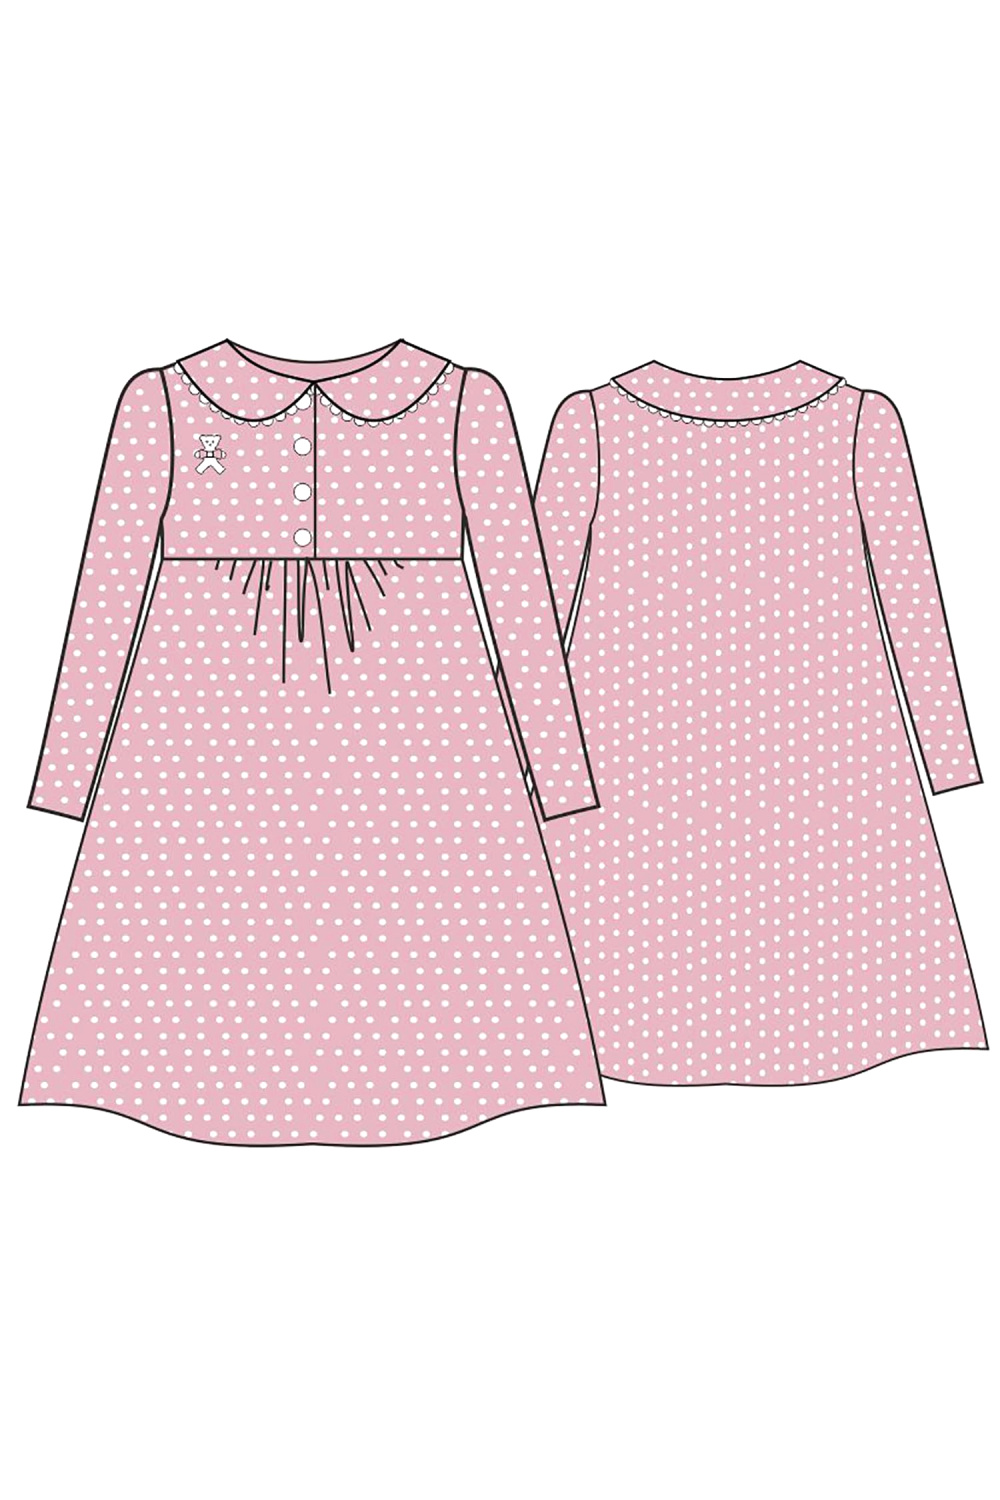  Сорочка для девочки из трикотажа хлопкового, цвет 